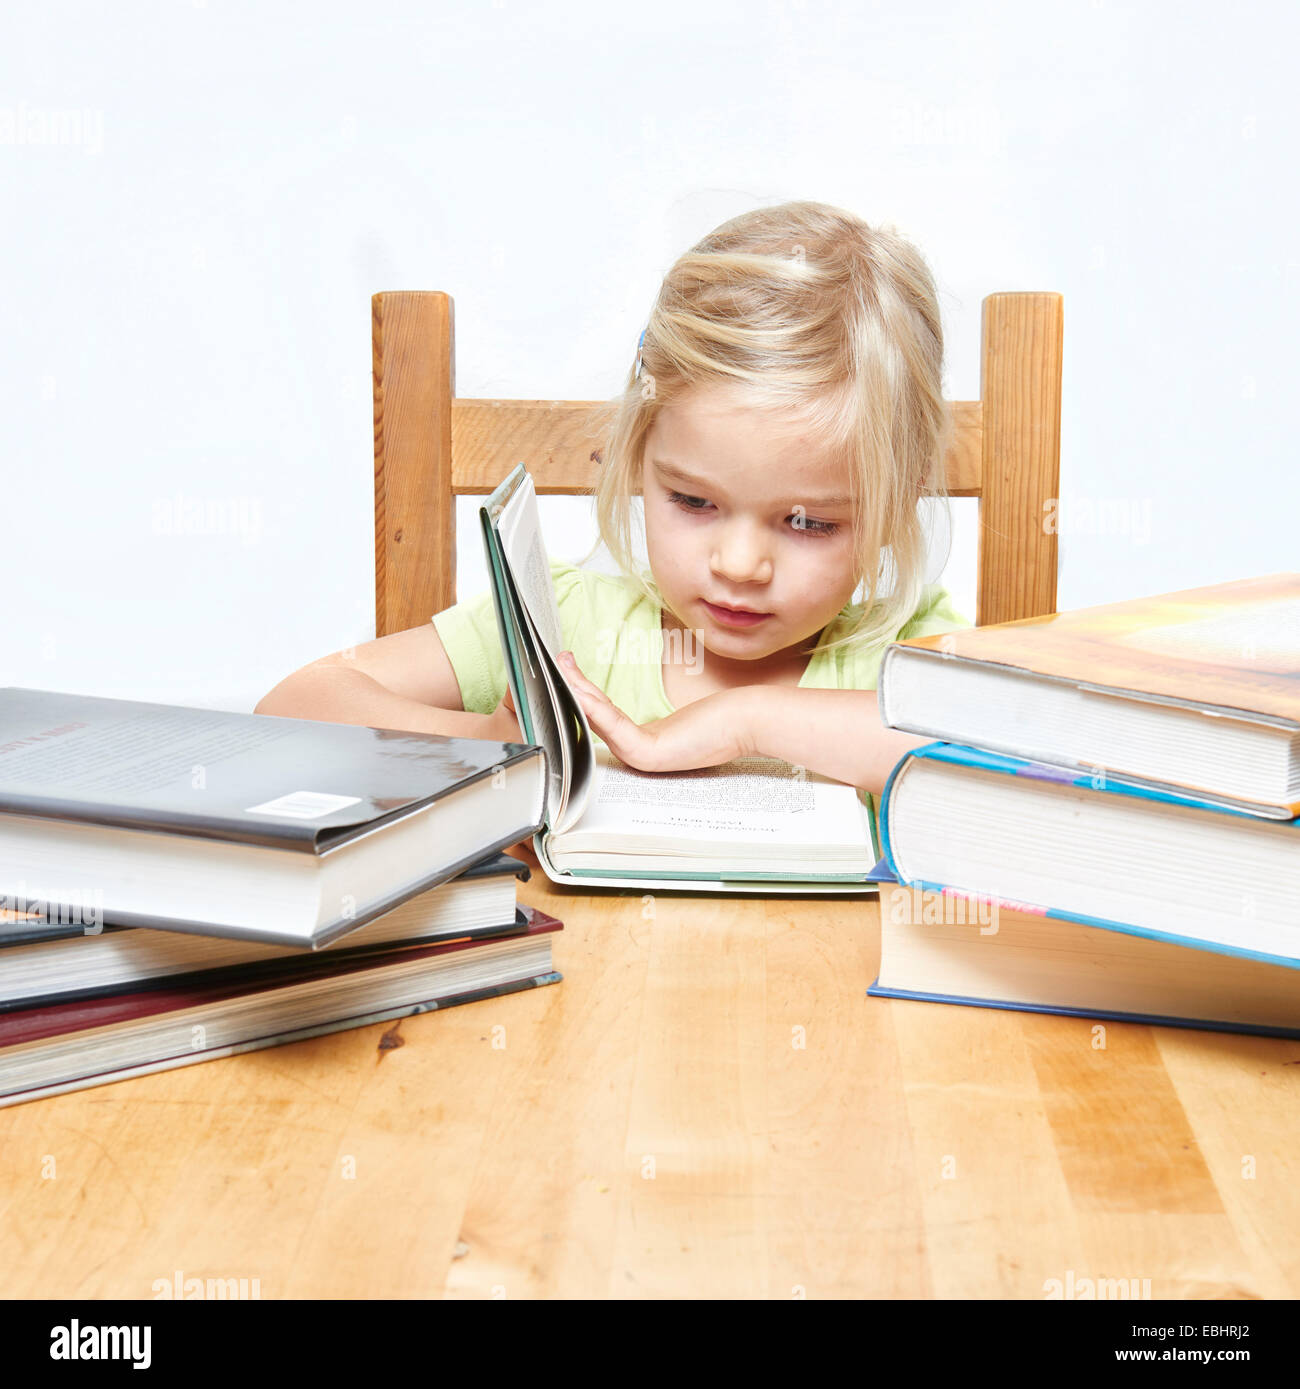 Lindo niño joven rubia chica leyendo y estudiando su libro, fondo blanco, pila de libros Foto de stock